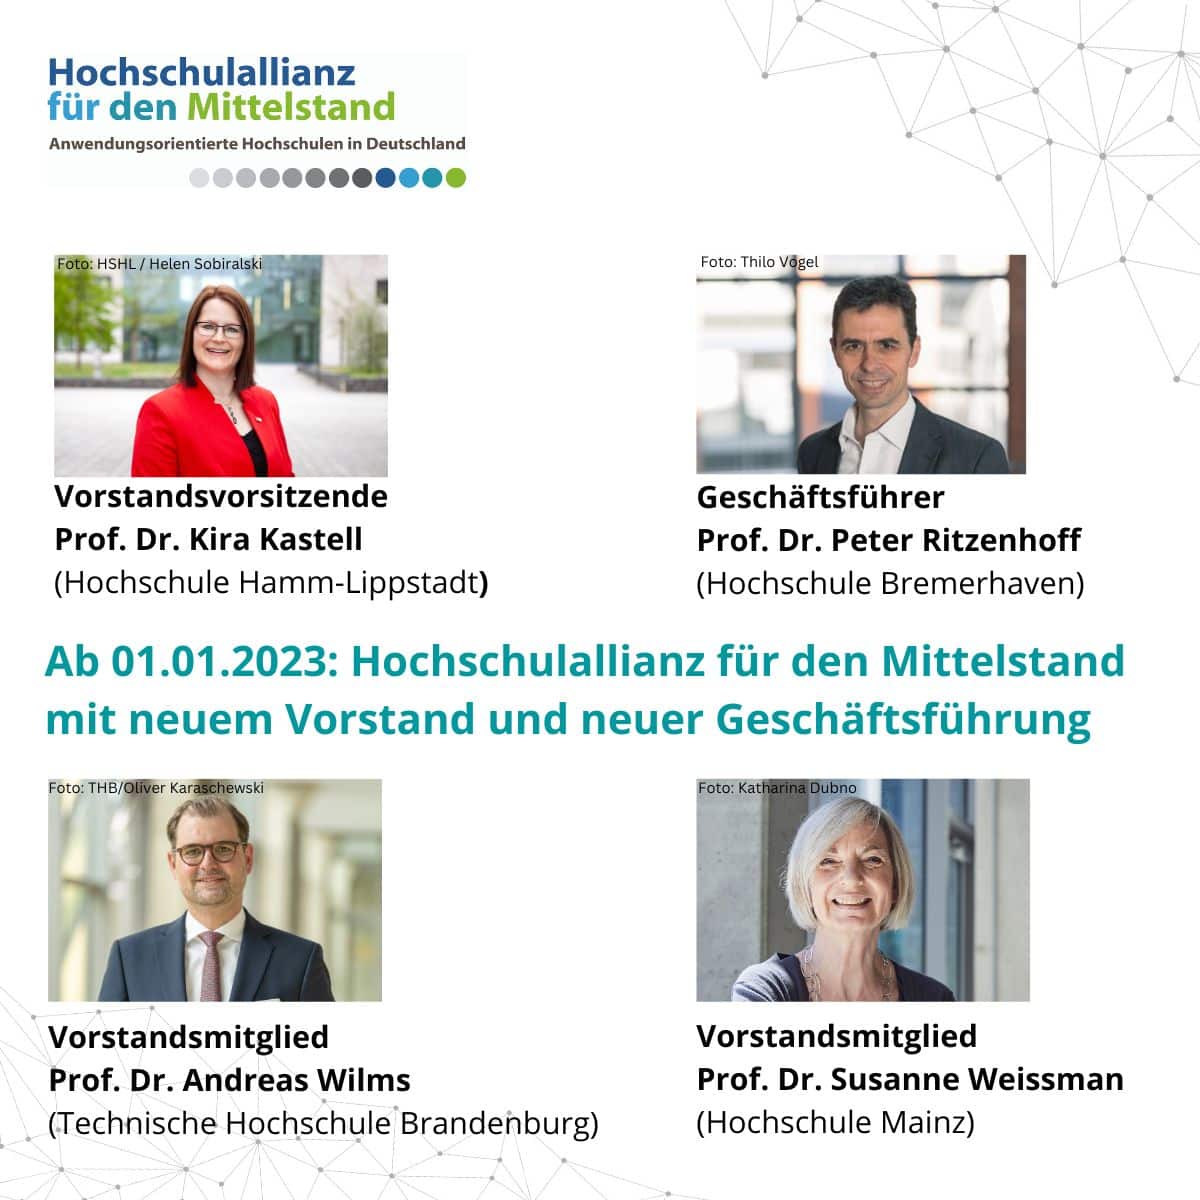 Der neu gewählte HAfM - Vorstand: Prof. Dr. Kira Kastell, Prof. Dr. Andreas Wilms und Prof. Dr. Susanne Weissman zusammen mit dem Geschäftsführer Prof. Dr. Peter Ritzenhoff